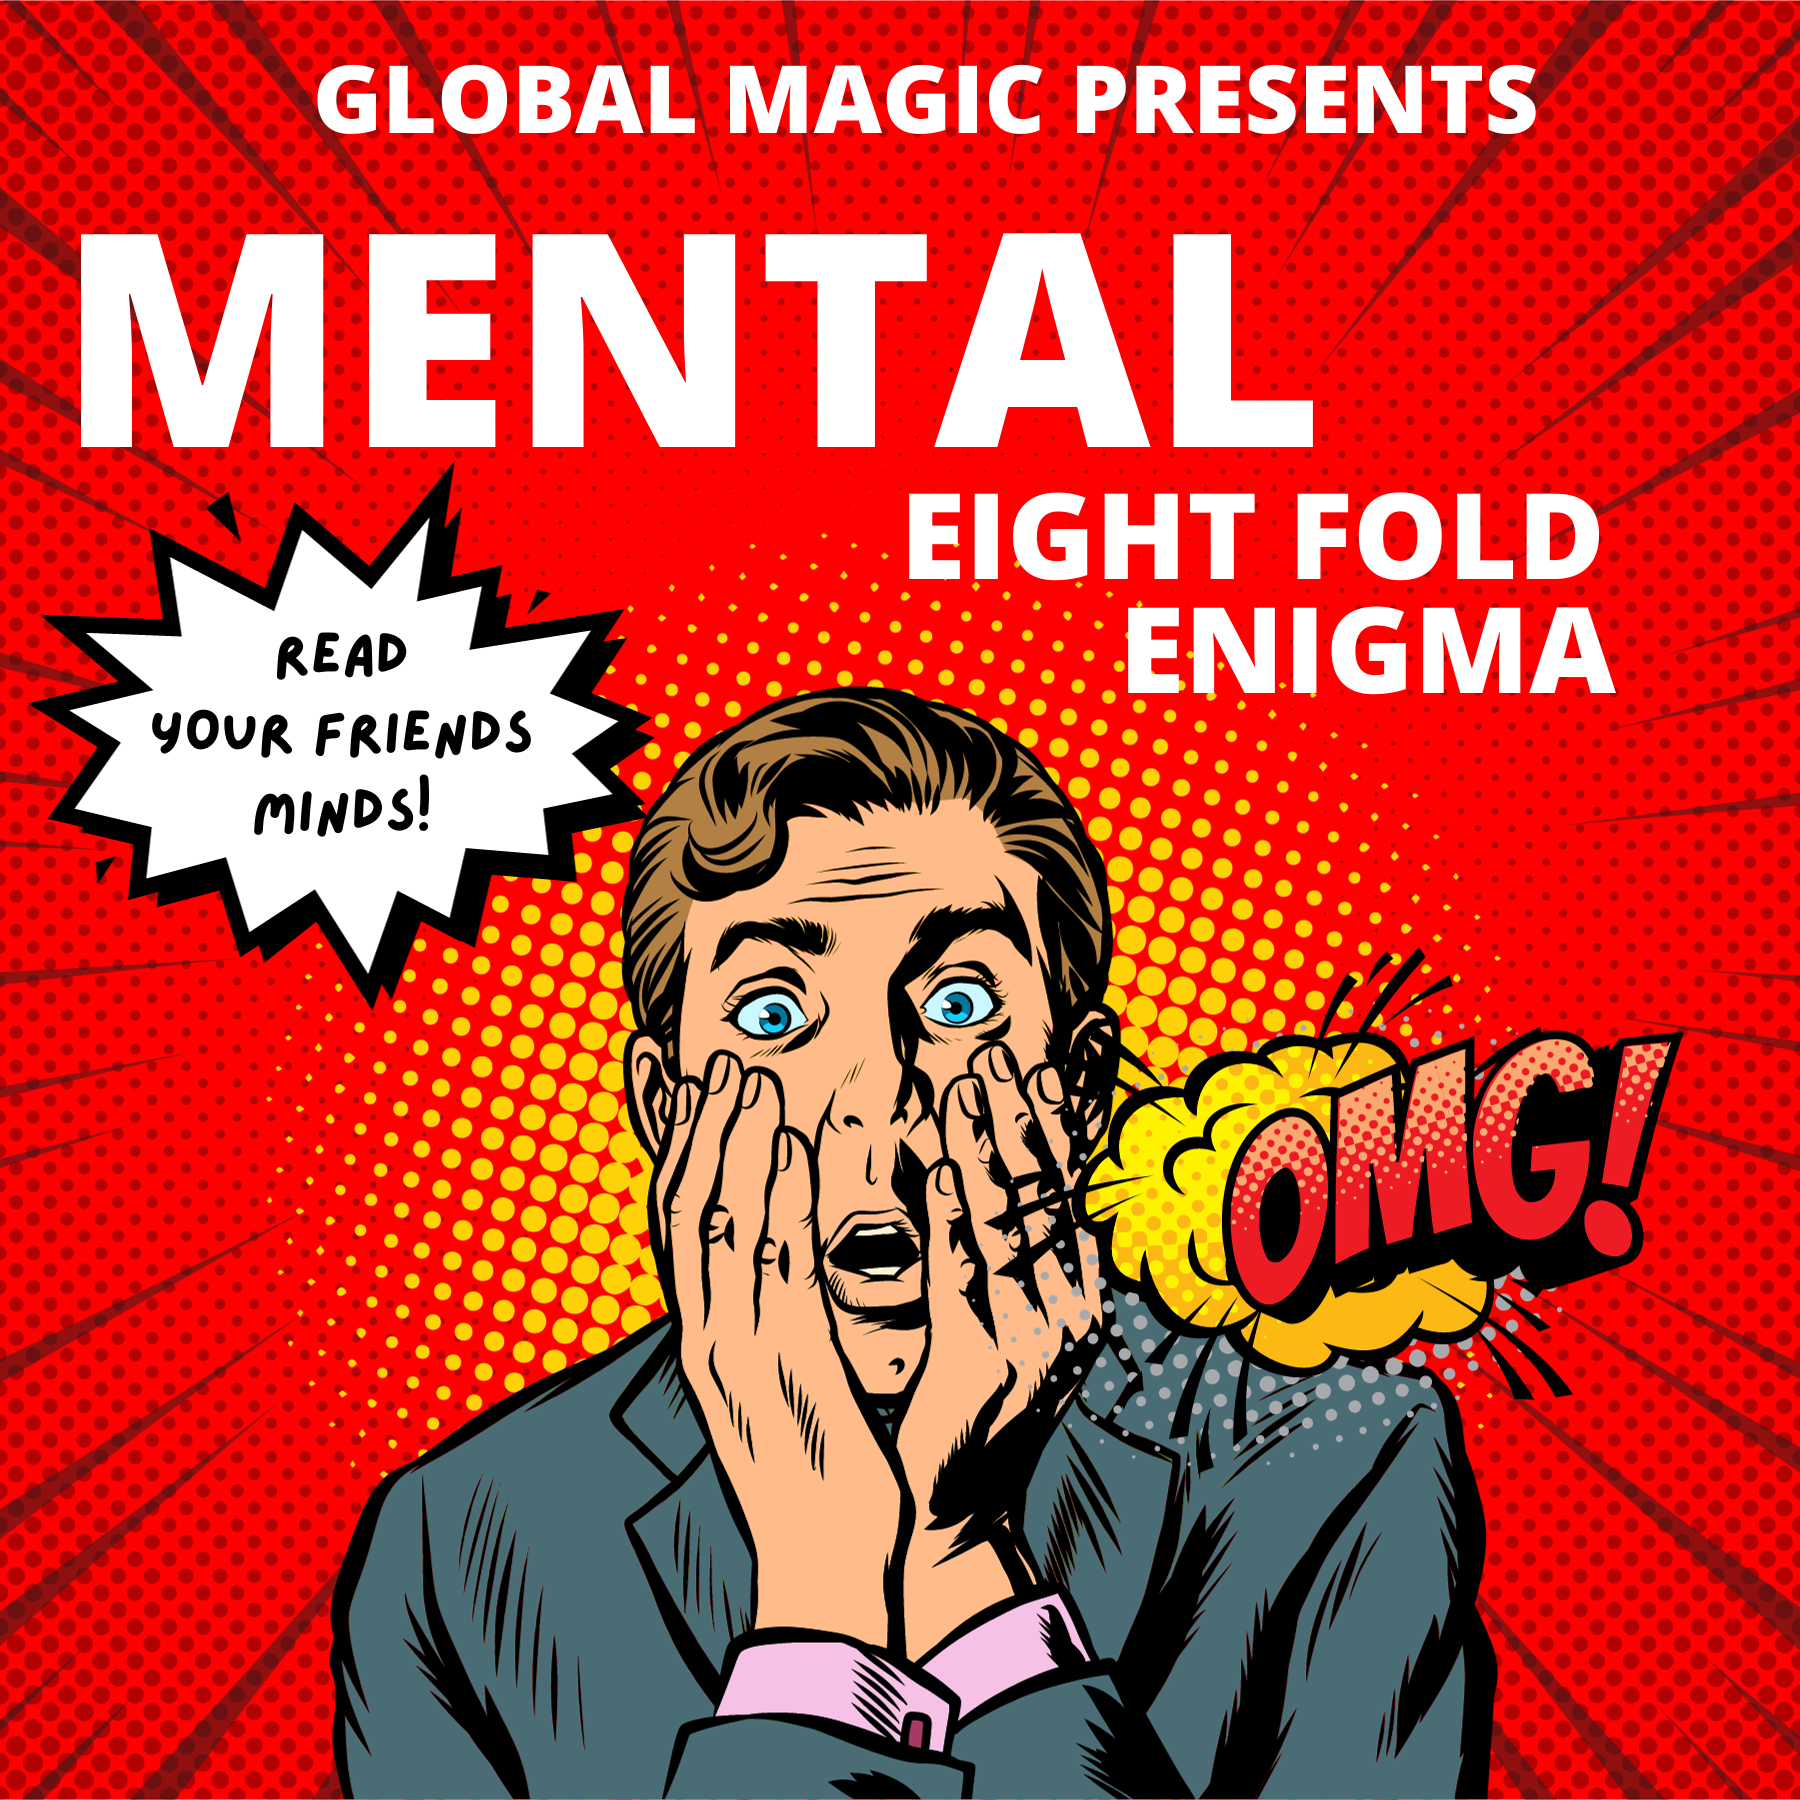 Mental Eight Fold Enigma